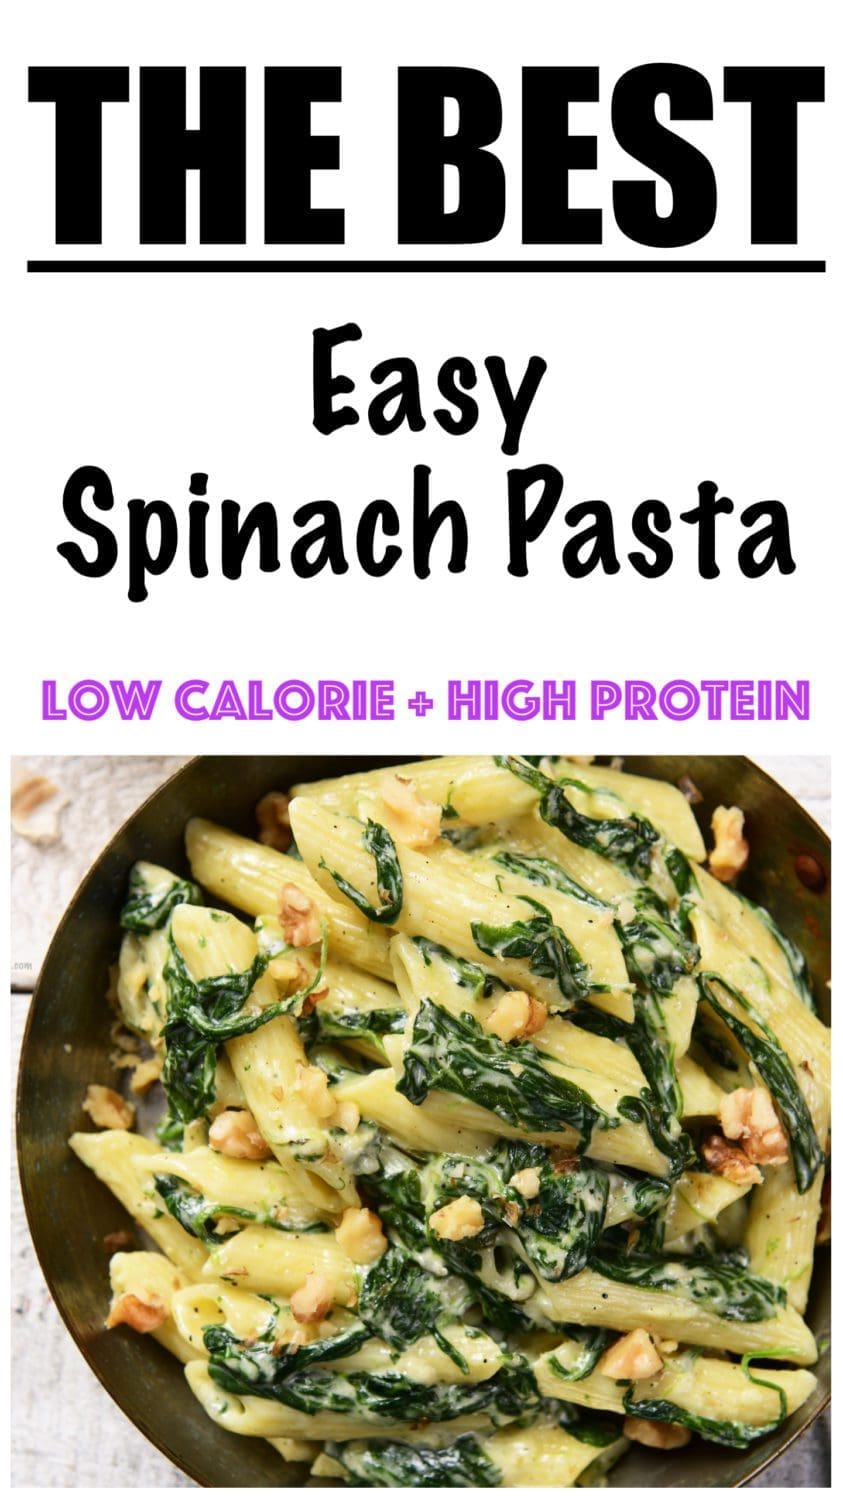 Easy Spinach Pasta Recipe